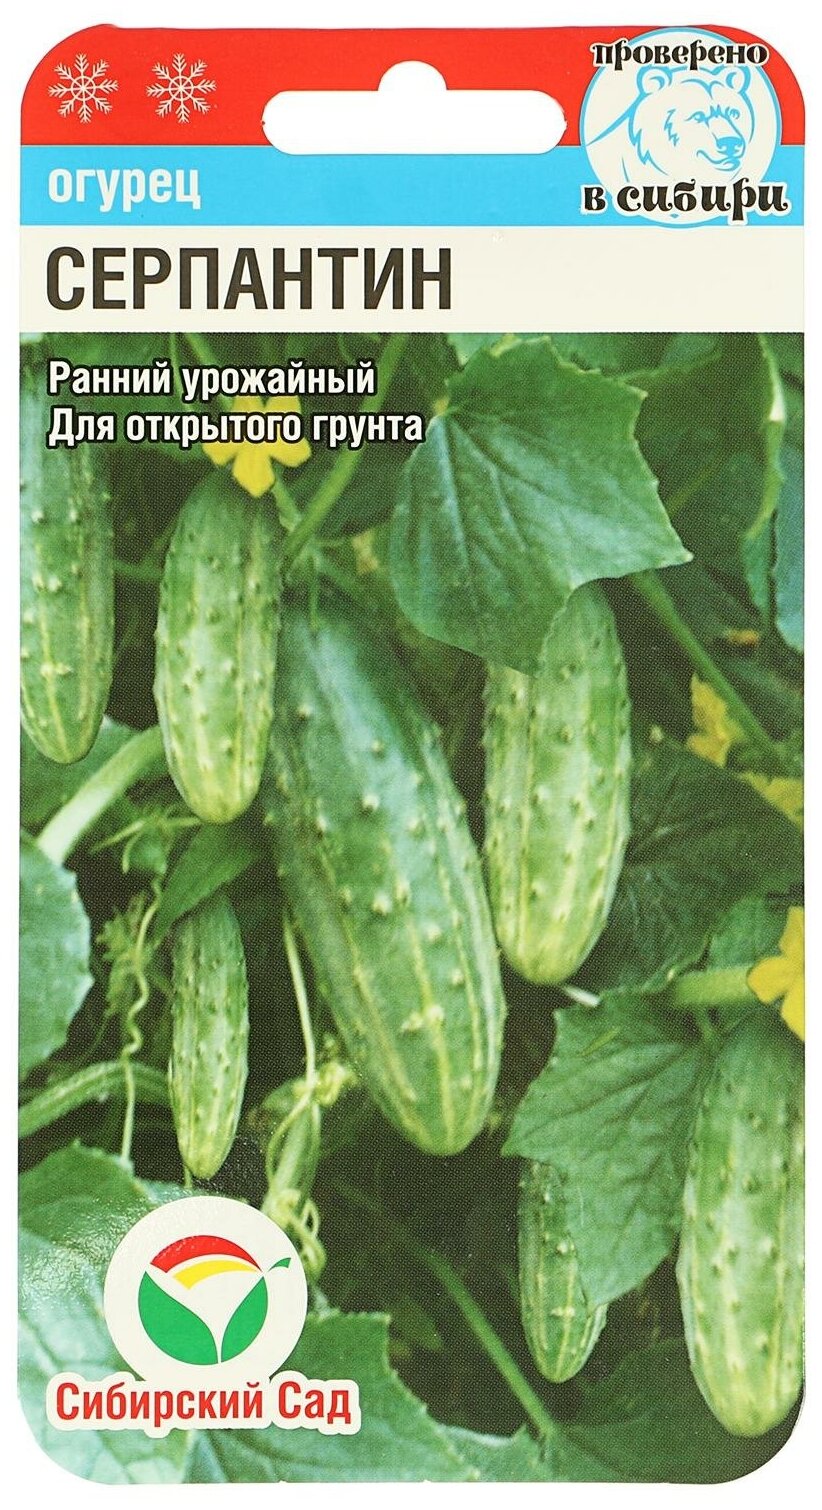 Огурец серпантин: описание и характеристика сорта, выращивание с фото